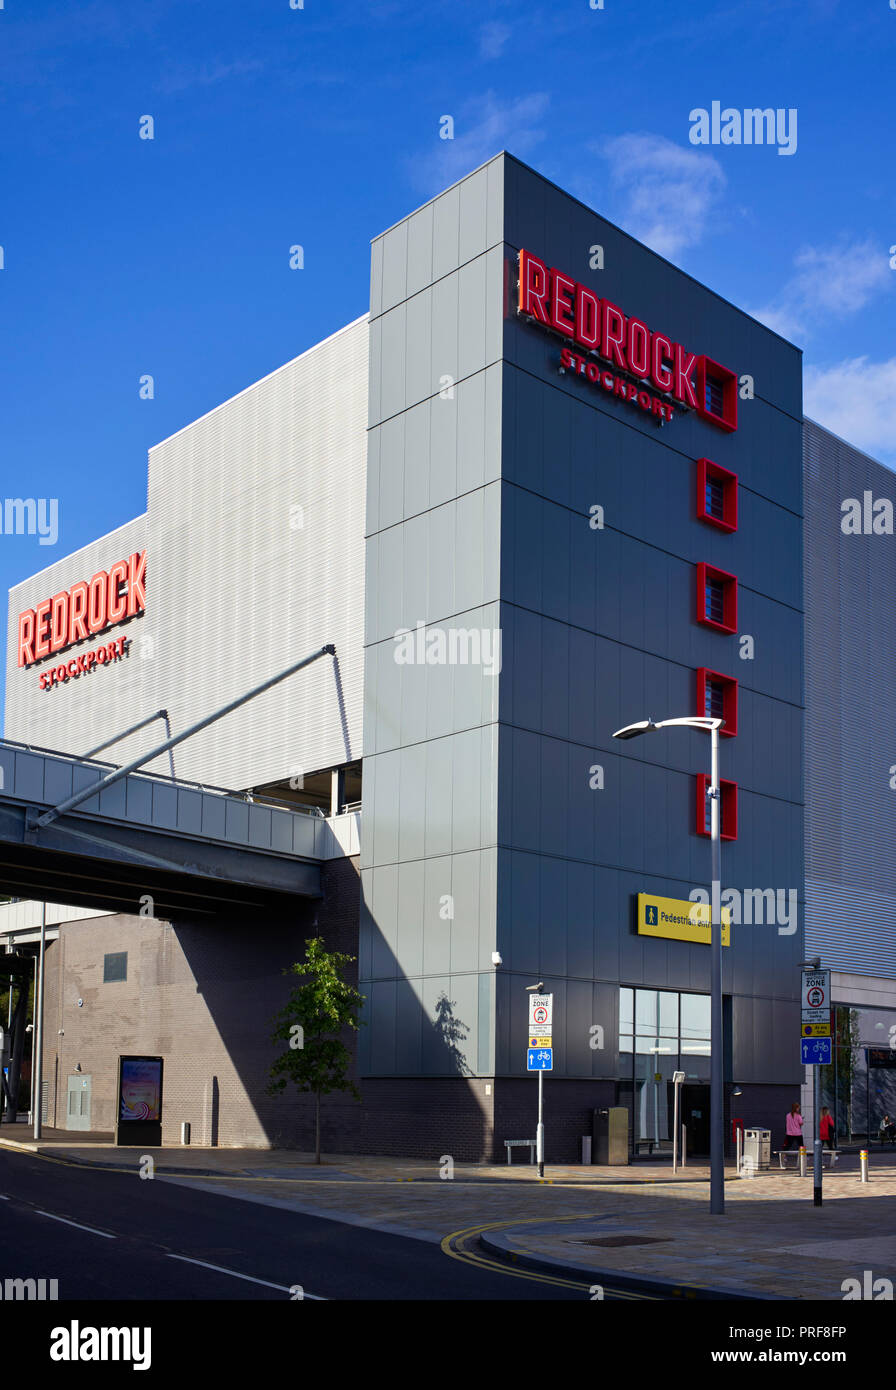 Redrock Gebäude Exterieur in Stockport, Karbunkel des Jahres 2018 gewann Stockfoto